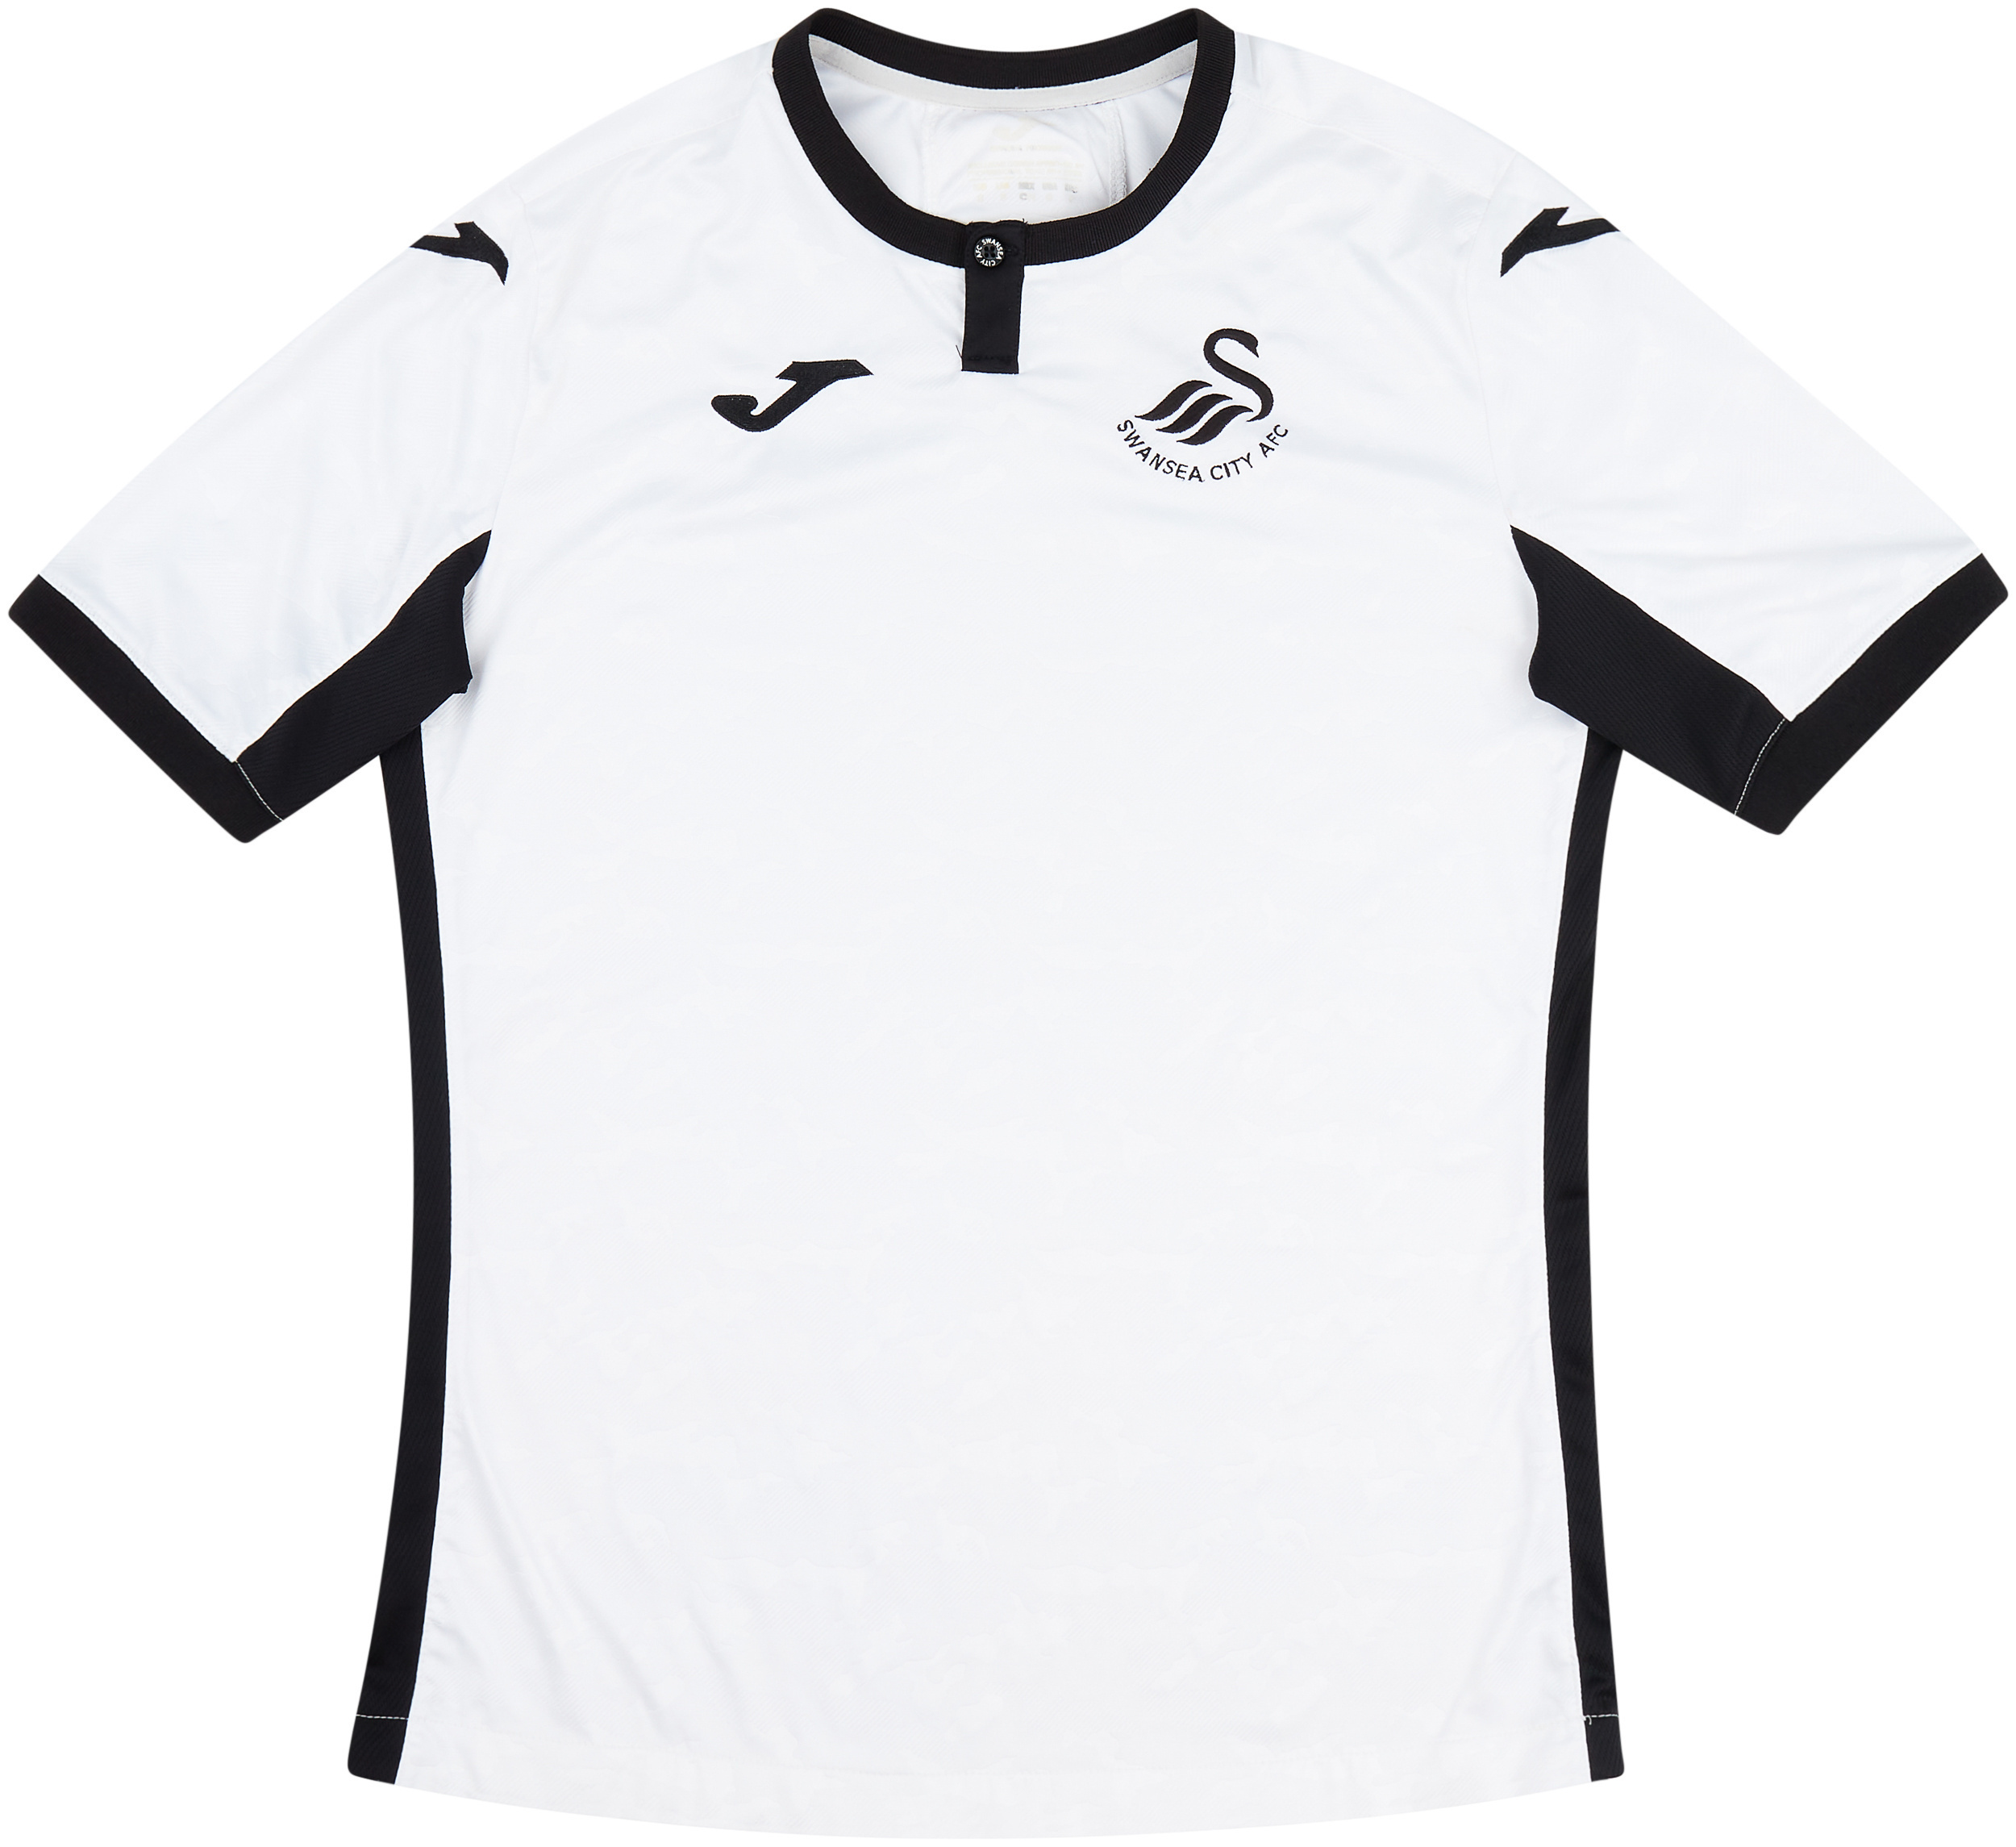 Swansea City  home shirt (Original)